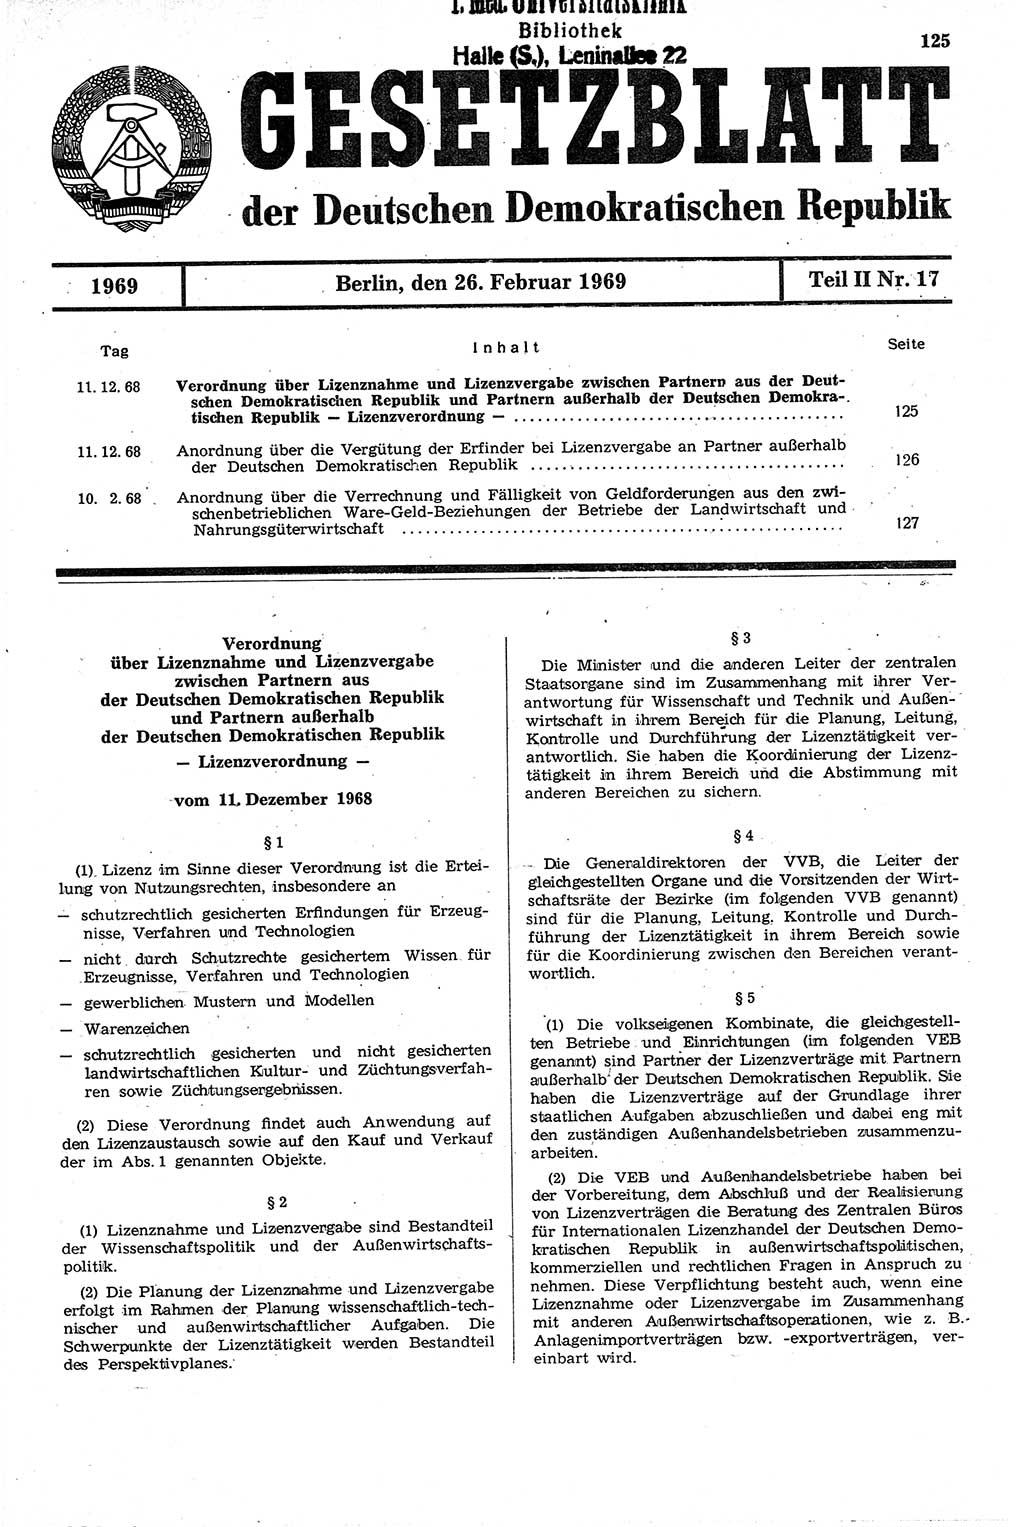 Gesetzblatt (GBl.) der Deutschen Demokratischen Republik (DDR) Teil ⅠⅠ 1969, Seite 125 (GBl. DDR ⅠⅠ 1969, S. 125)